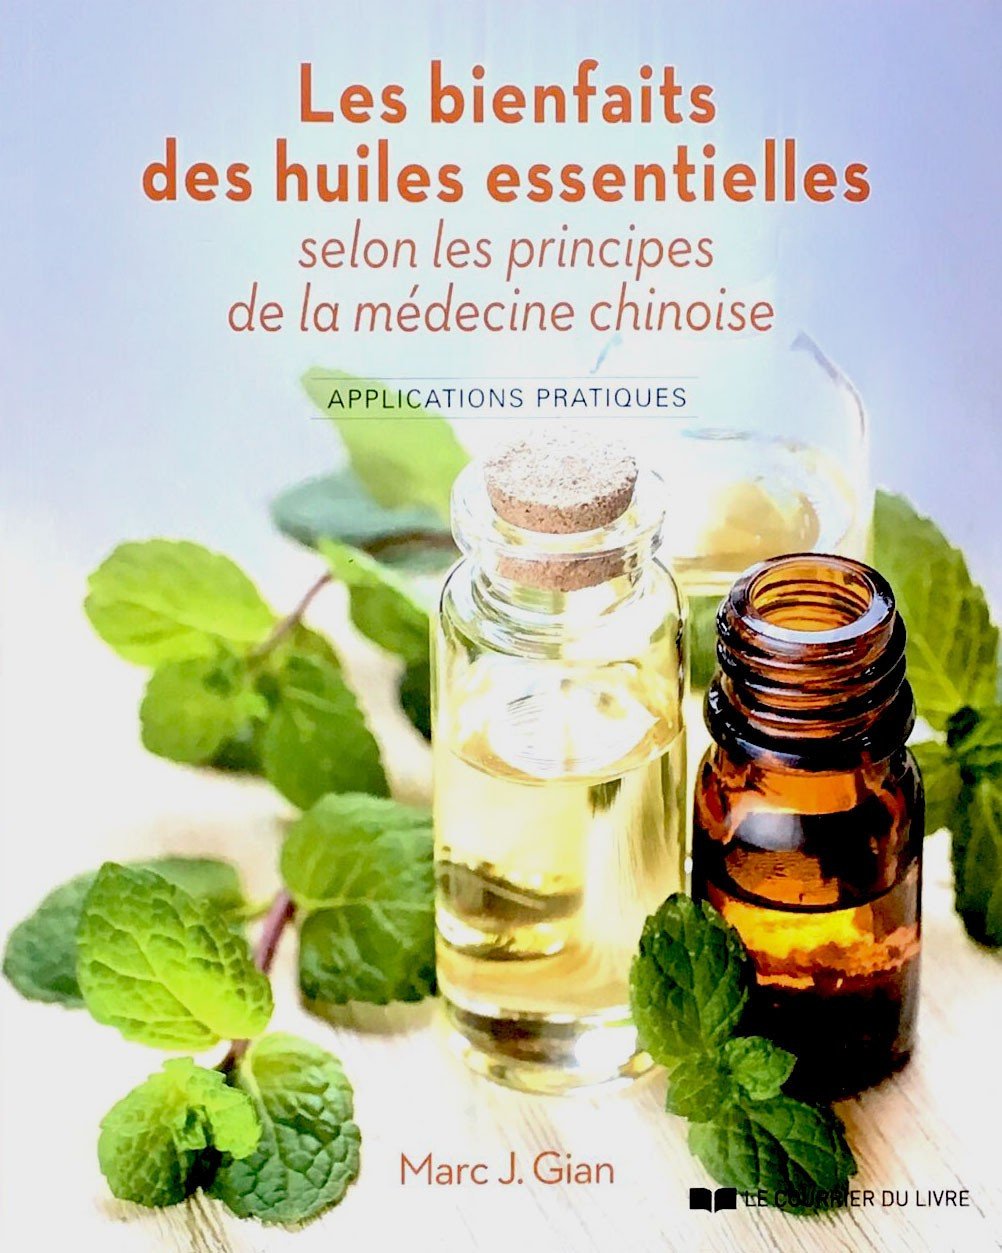 Les bienfaits des huiles essentielles selon la médecine chinoise - App